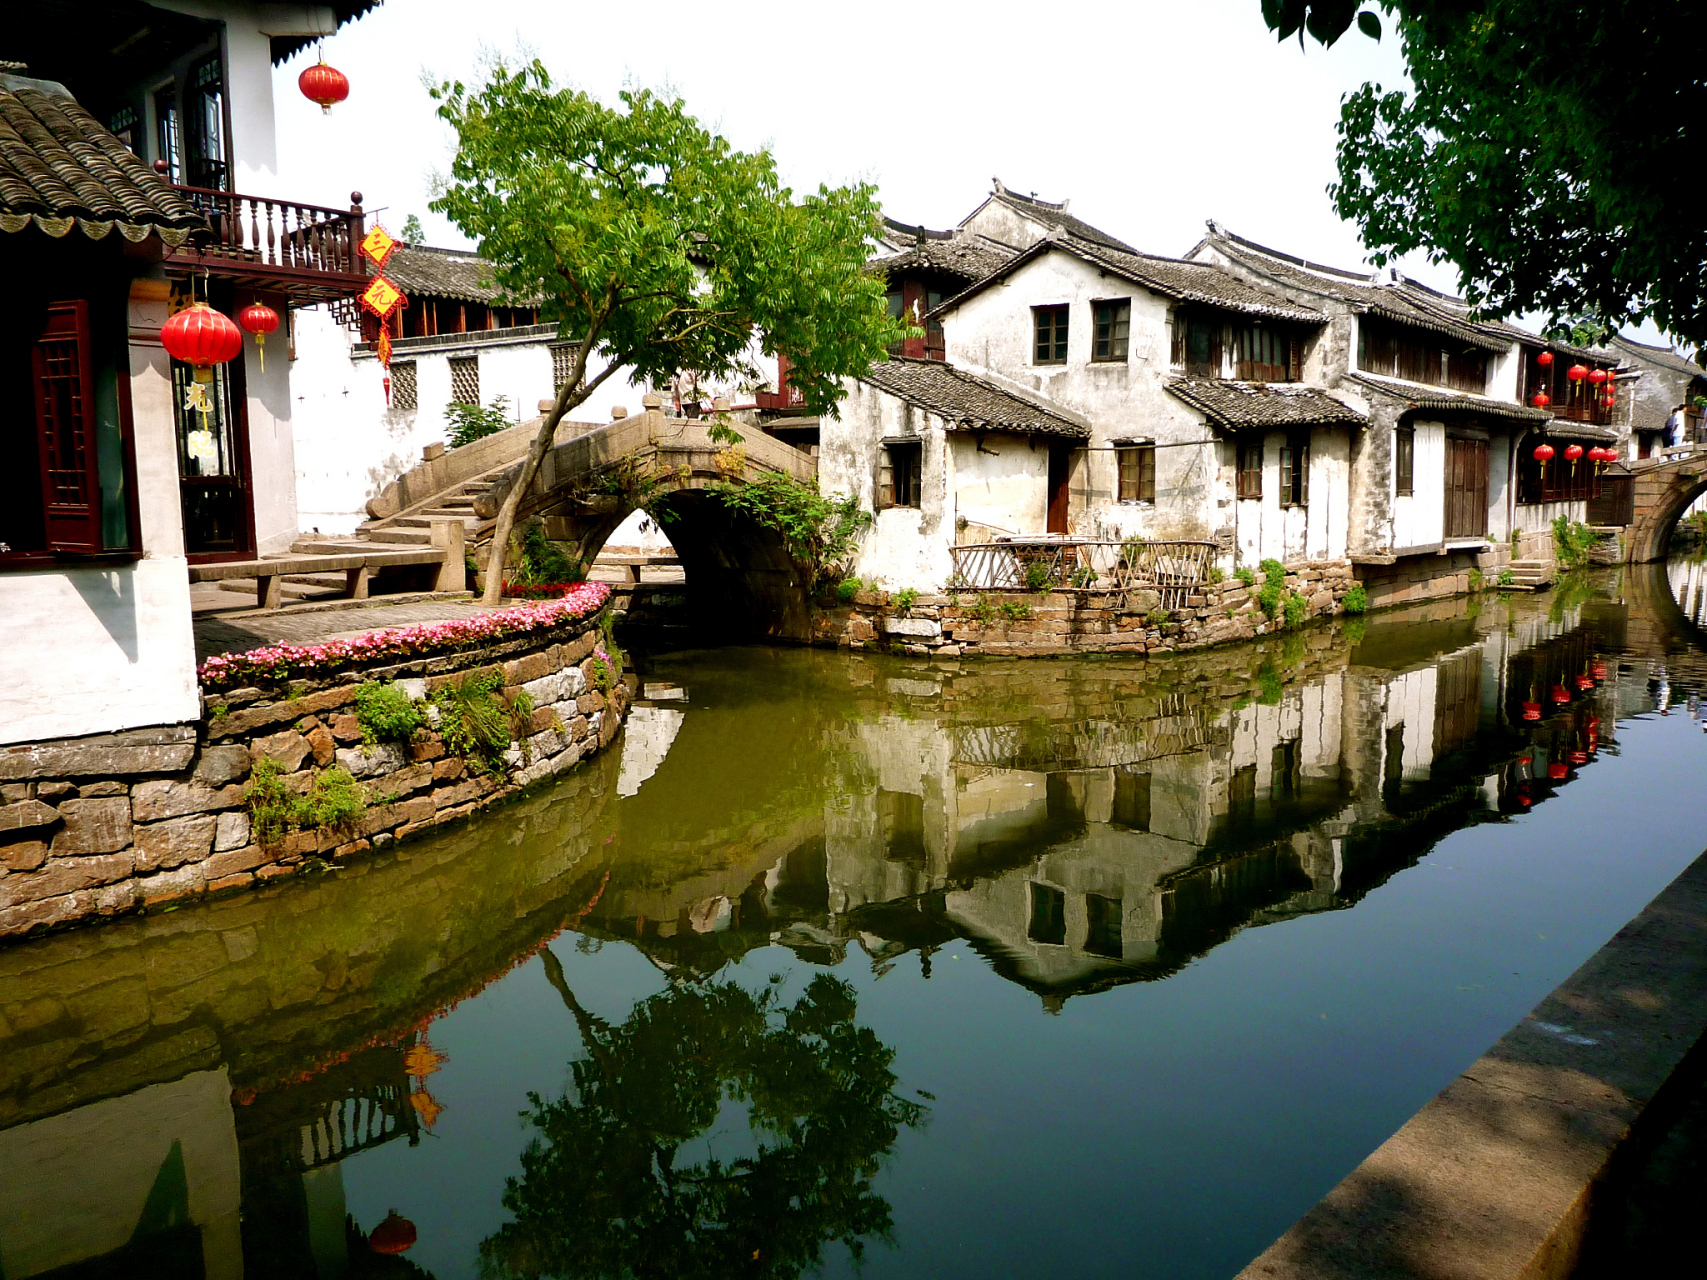 周庄古镇是国家5a级旅游景区,位于江苏昆山市周庄镇,距离上海,苏州